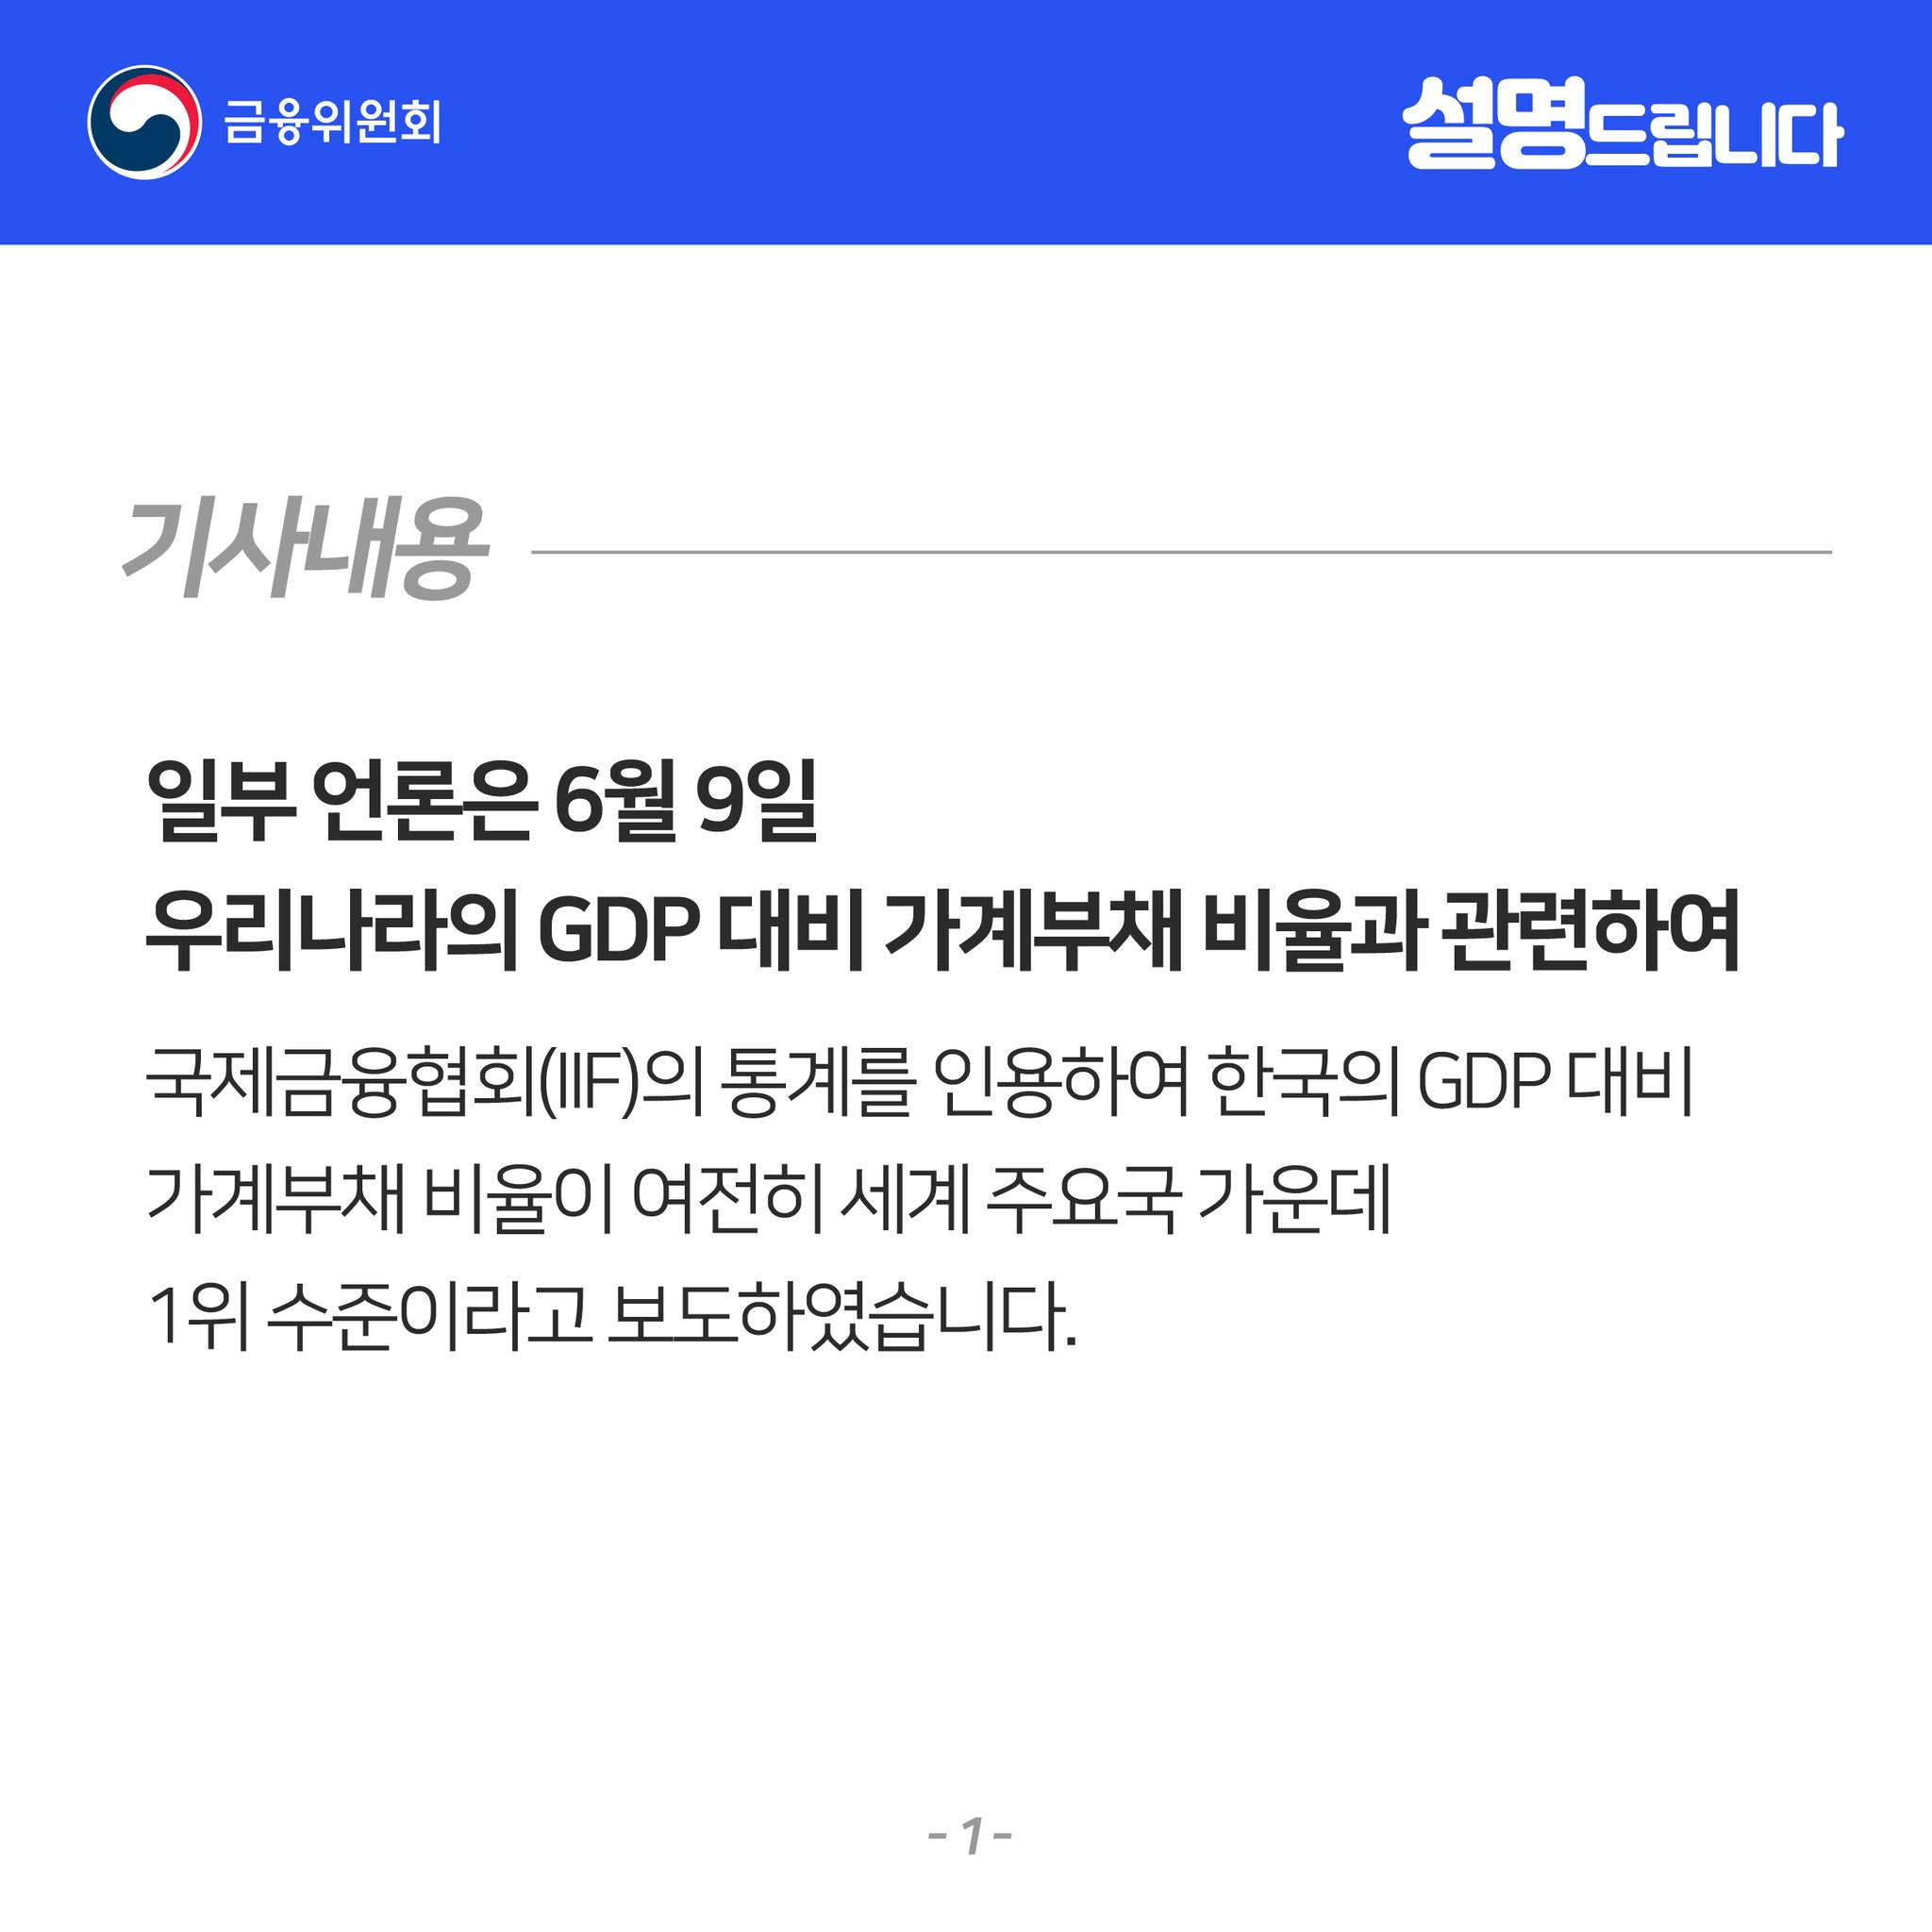 1. 기사내용. 일부 언론은 6월 9일 우리나라의 GDP 대비 가계부채 비율과 관련하여 국제금융협회(IIF)의 통계를 인용하여 한국의 GDP 대비 가계부채 비율이 여전히 세계 주요국 가운데 1위 수준이라고 보도하였습니다.